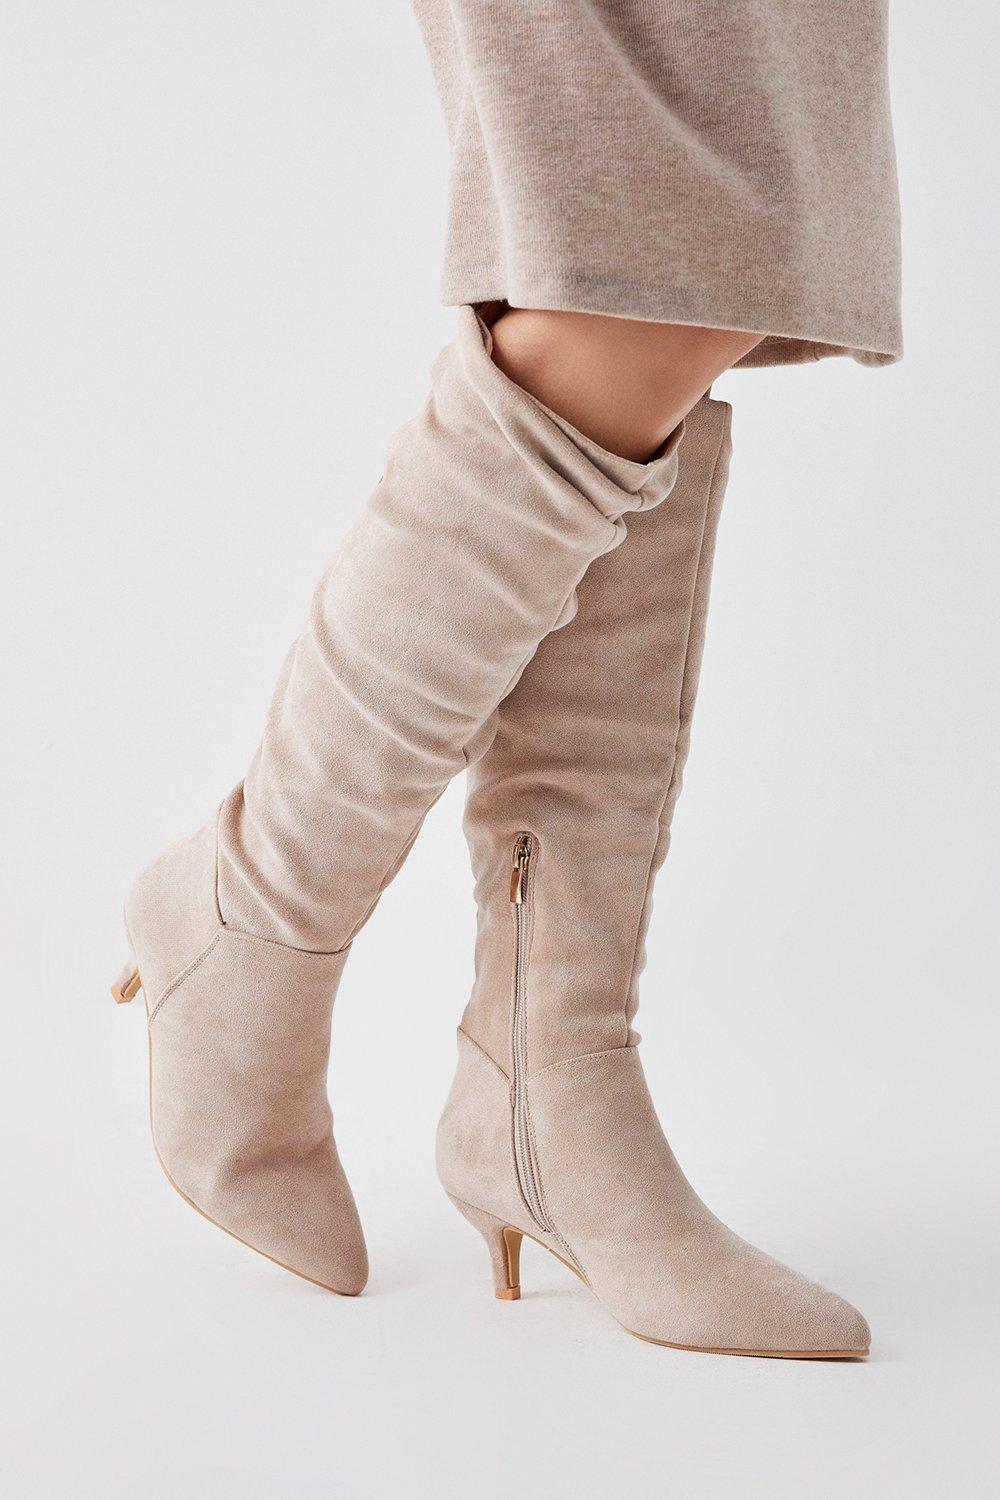 Women’s Khloe Knee High Low Heel Ruched Boots - beige - 4